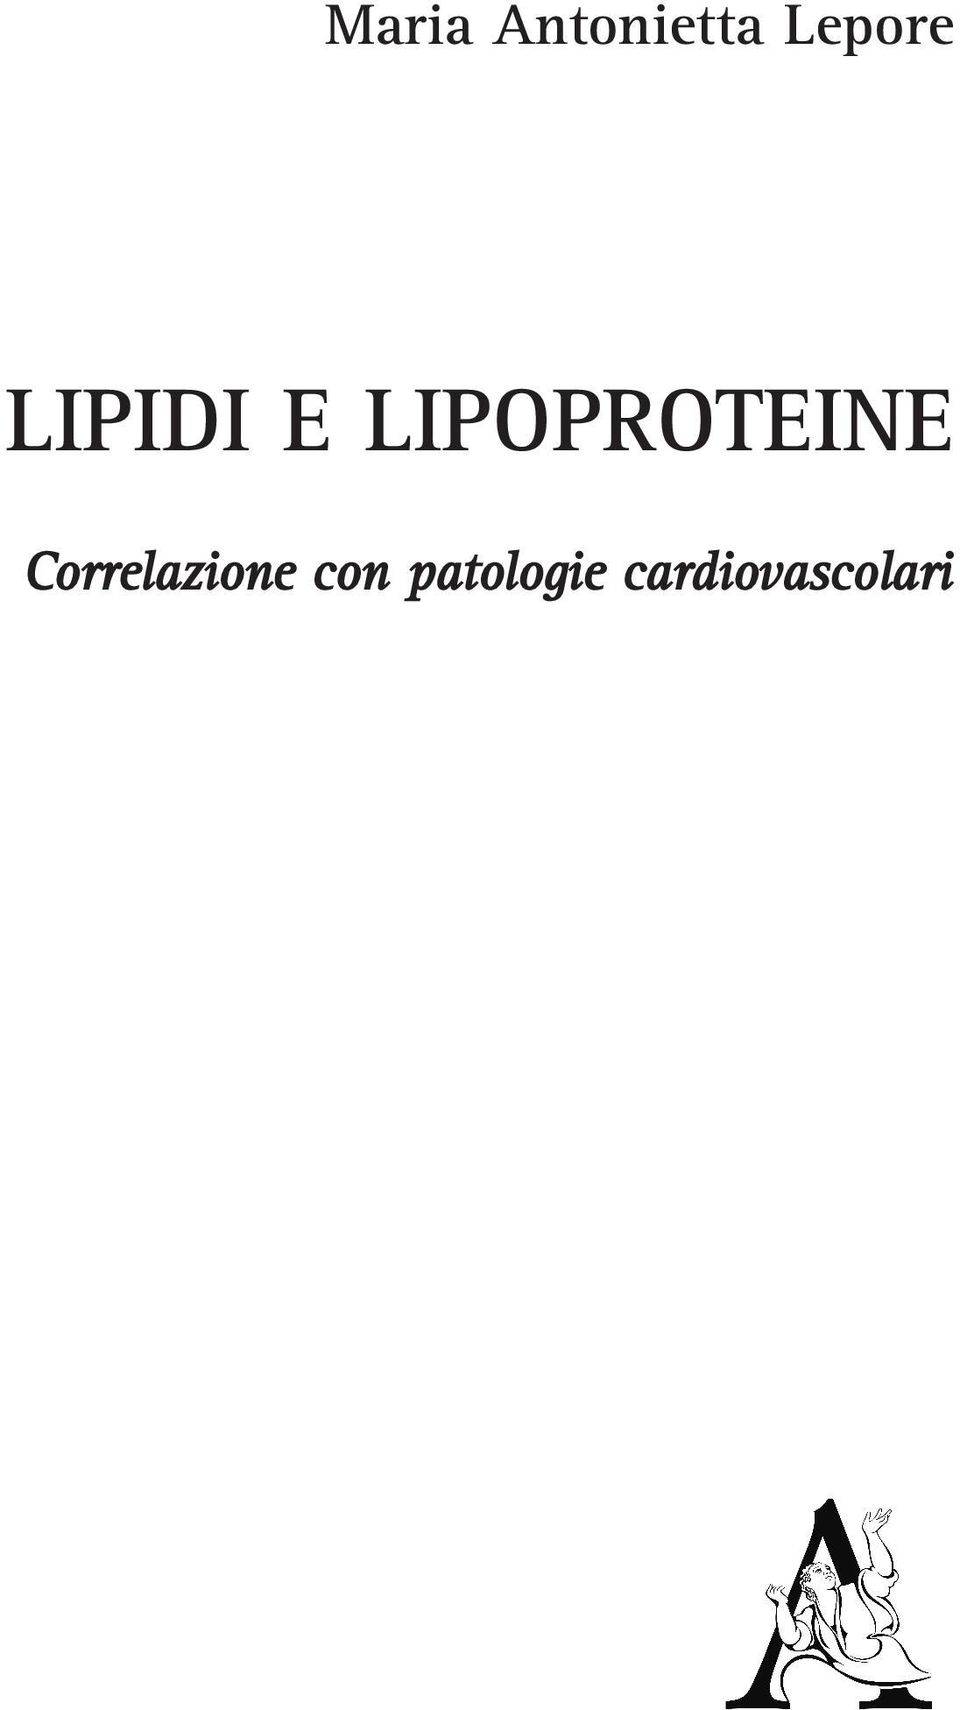 LIPOPROTEINE